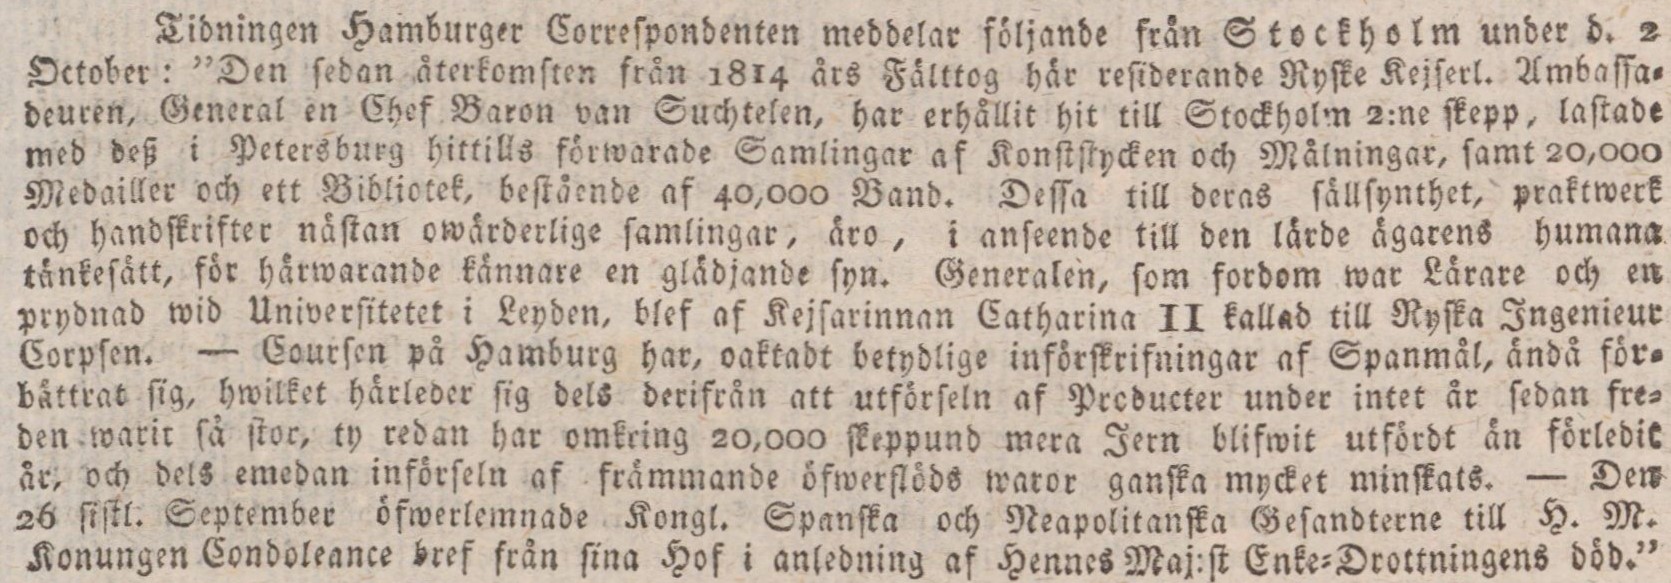 Tidningsklipp med text i frakturstil. Text: Den sedan återkomsten från 1814 års fälttog. 